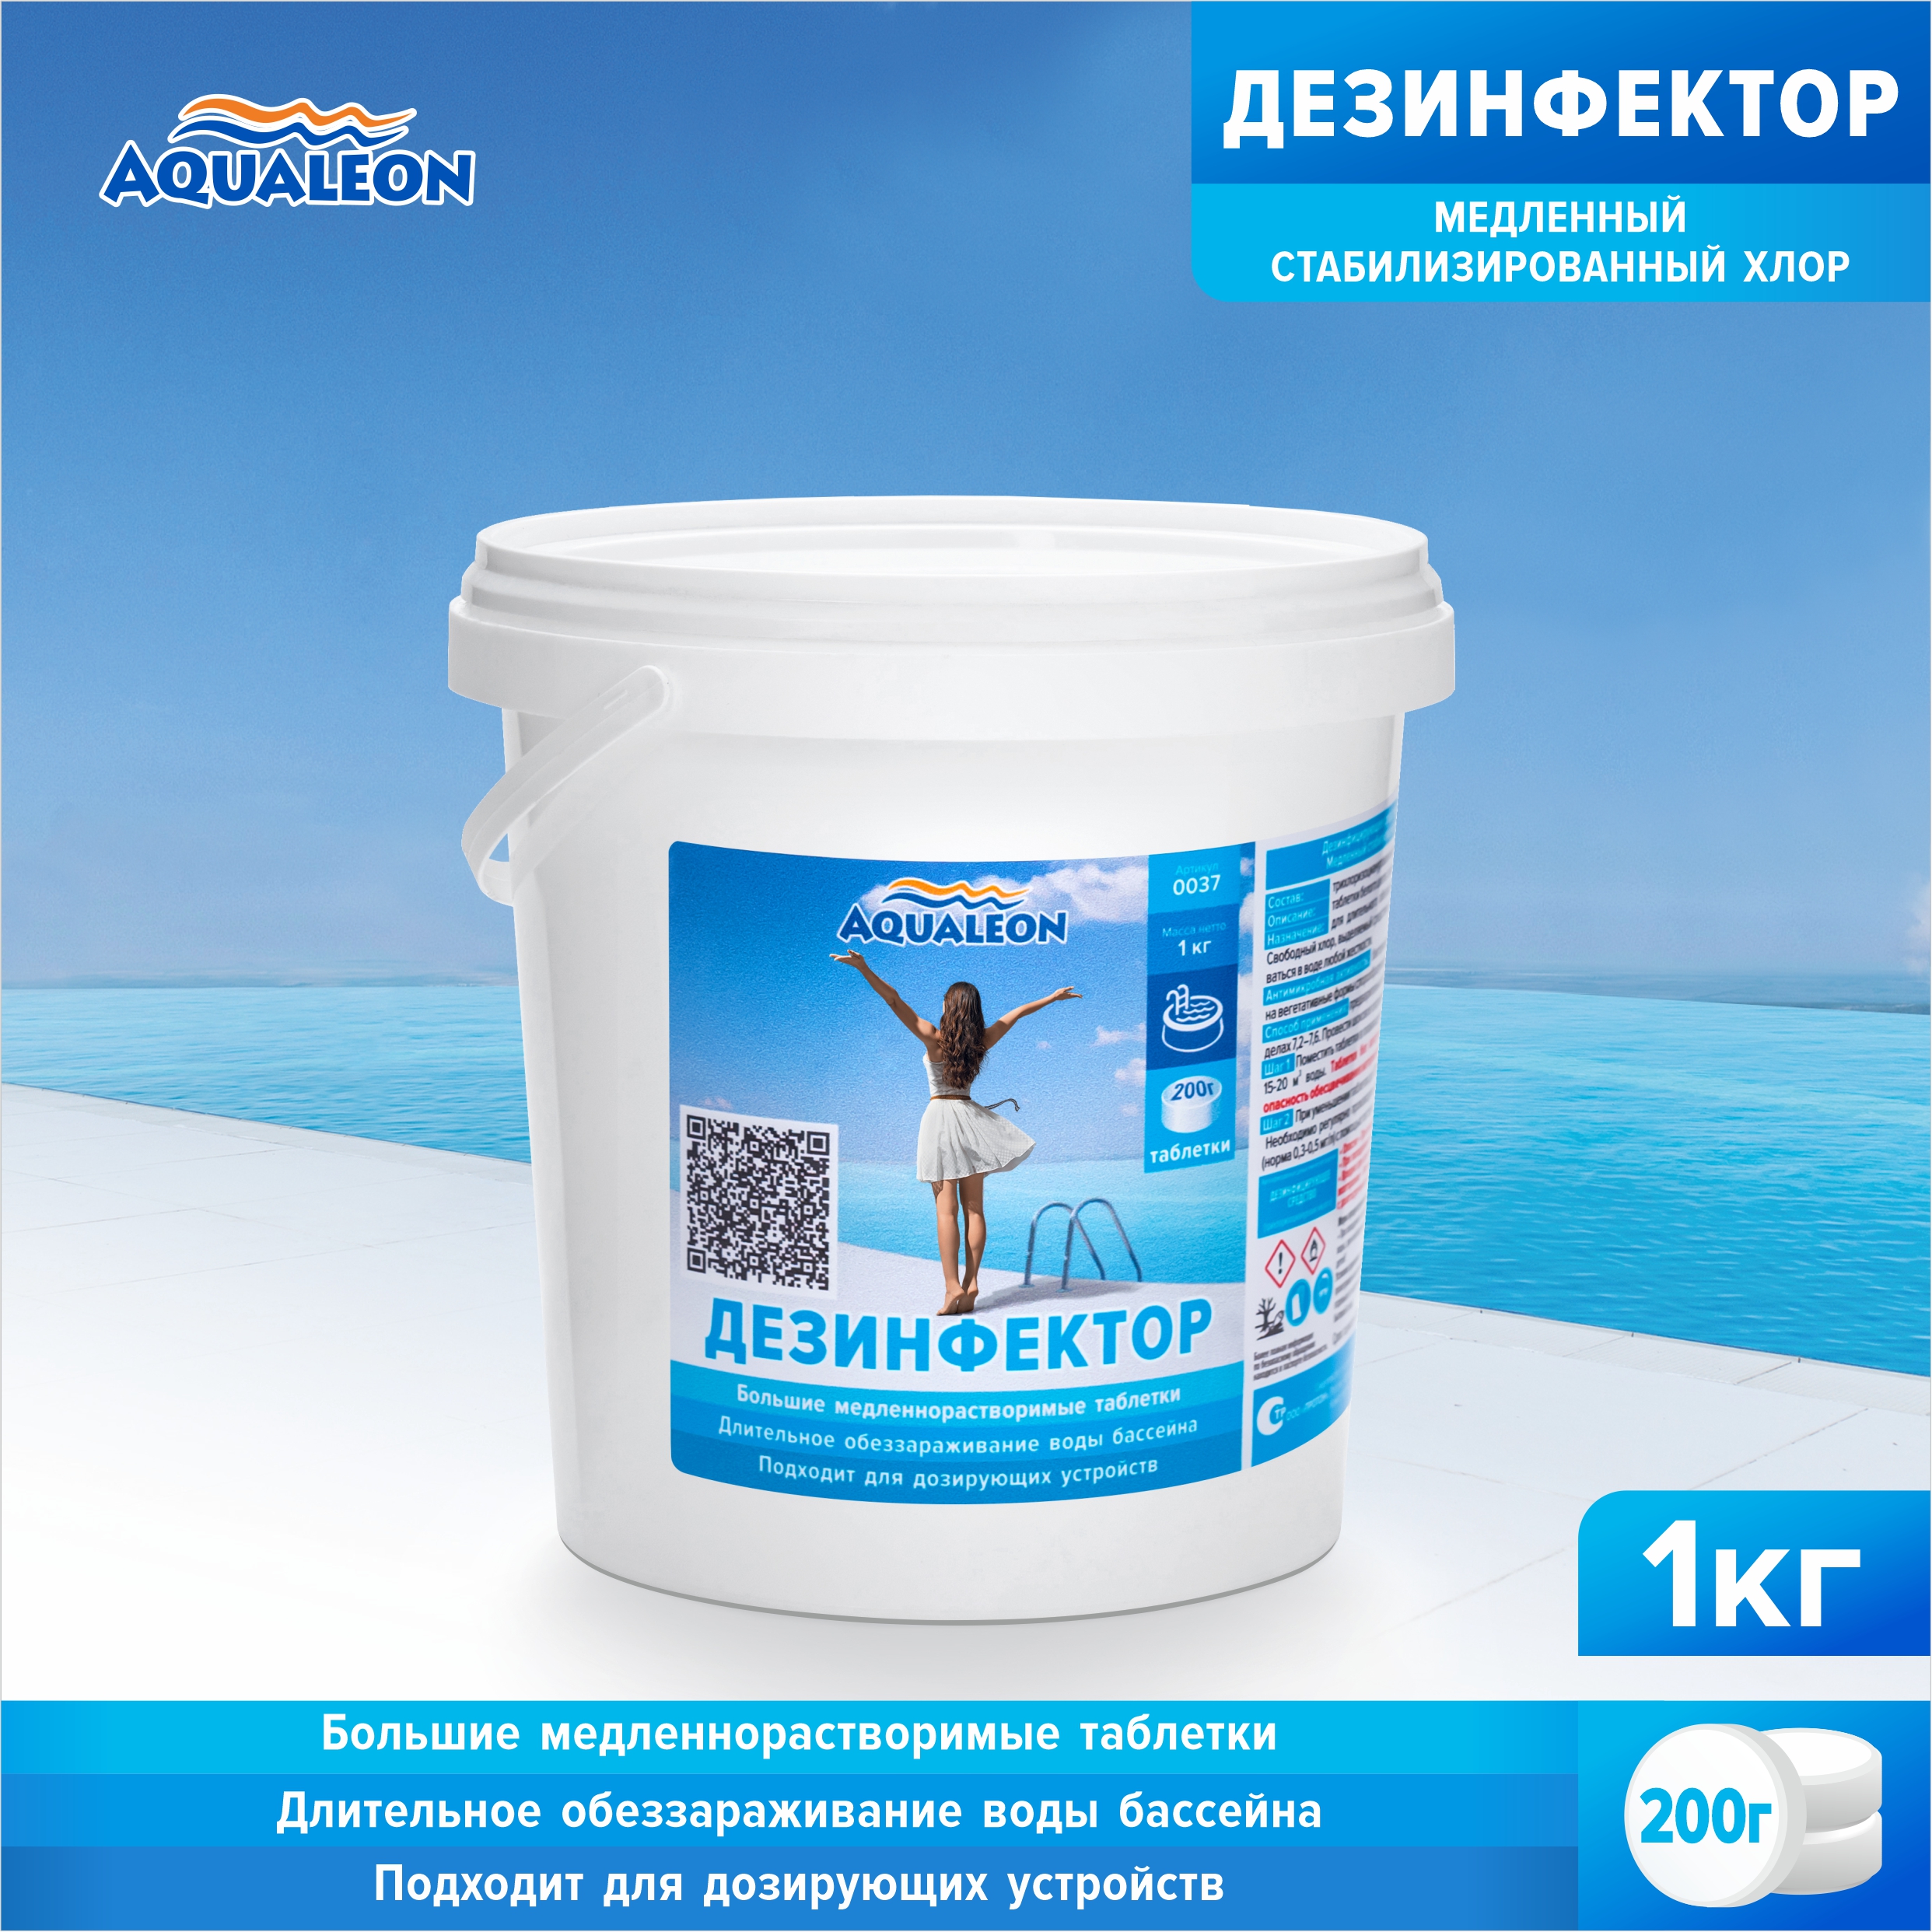 Медленный хлор для бассейна (МСХ) Aqualeon таблетки по 200 гр., 1 кг